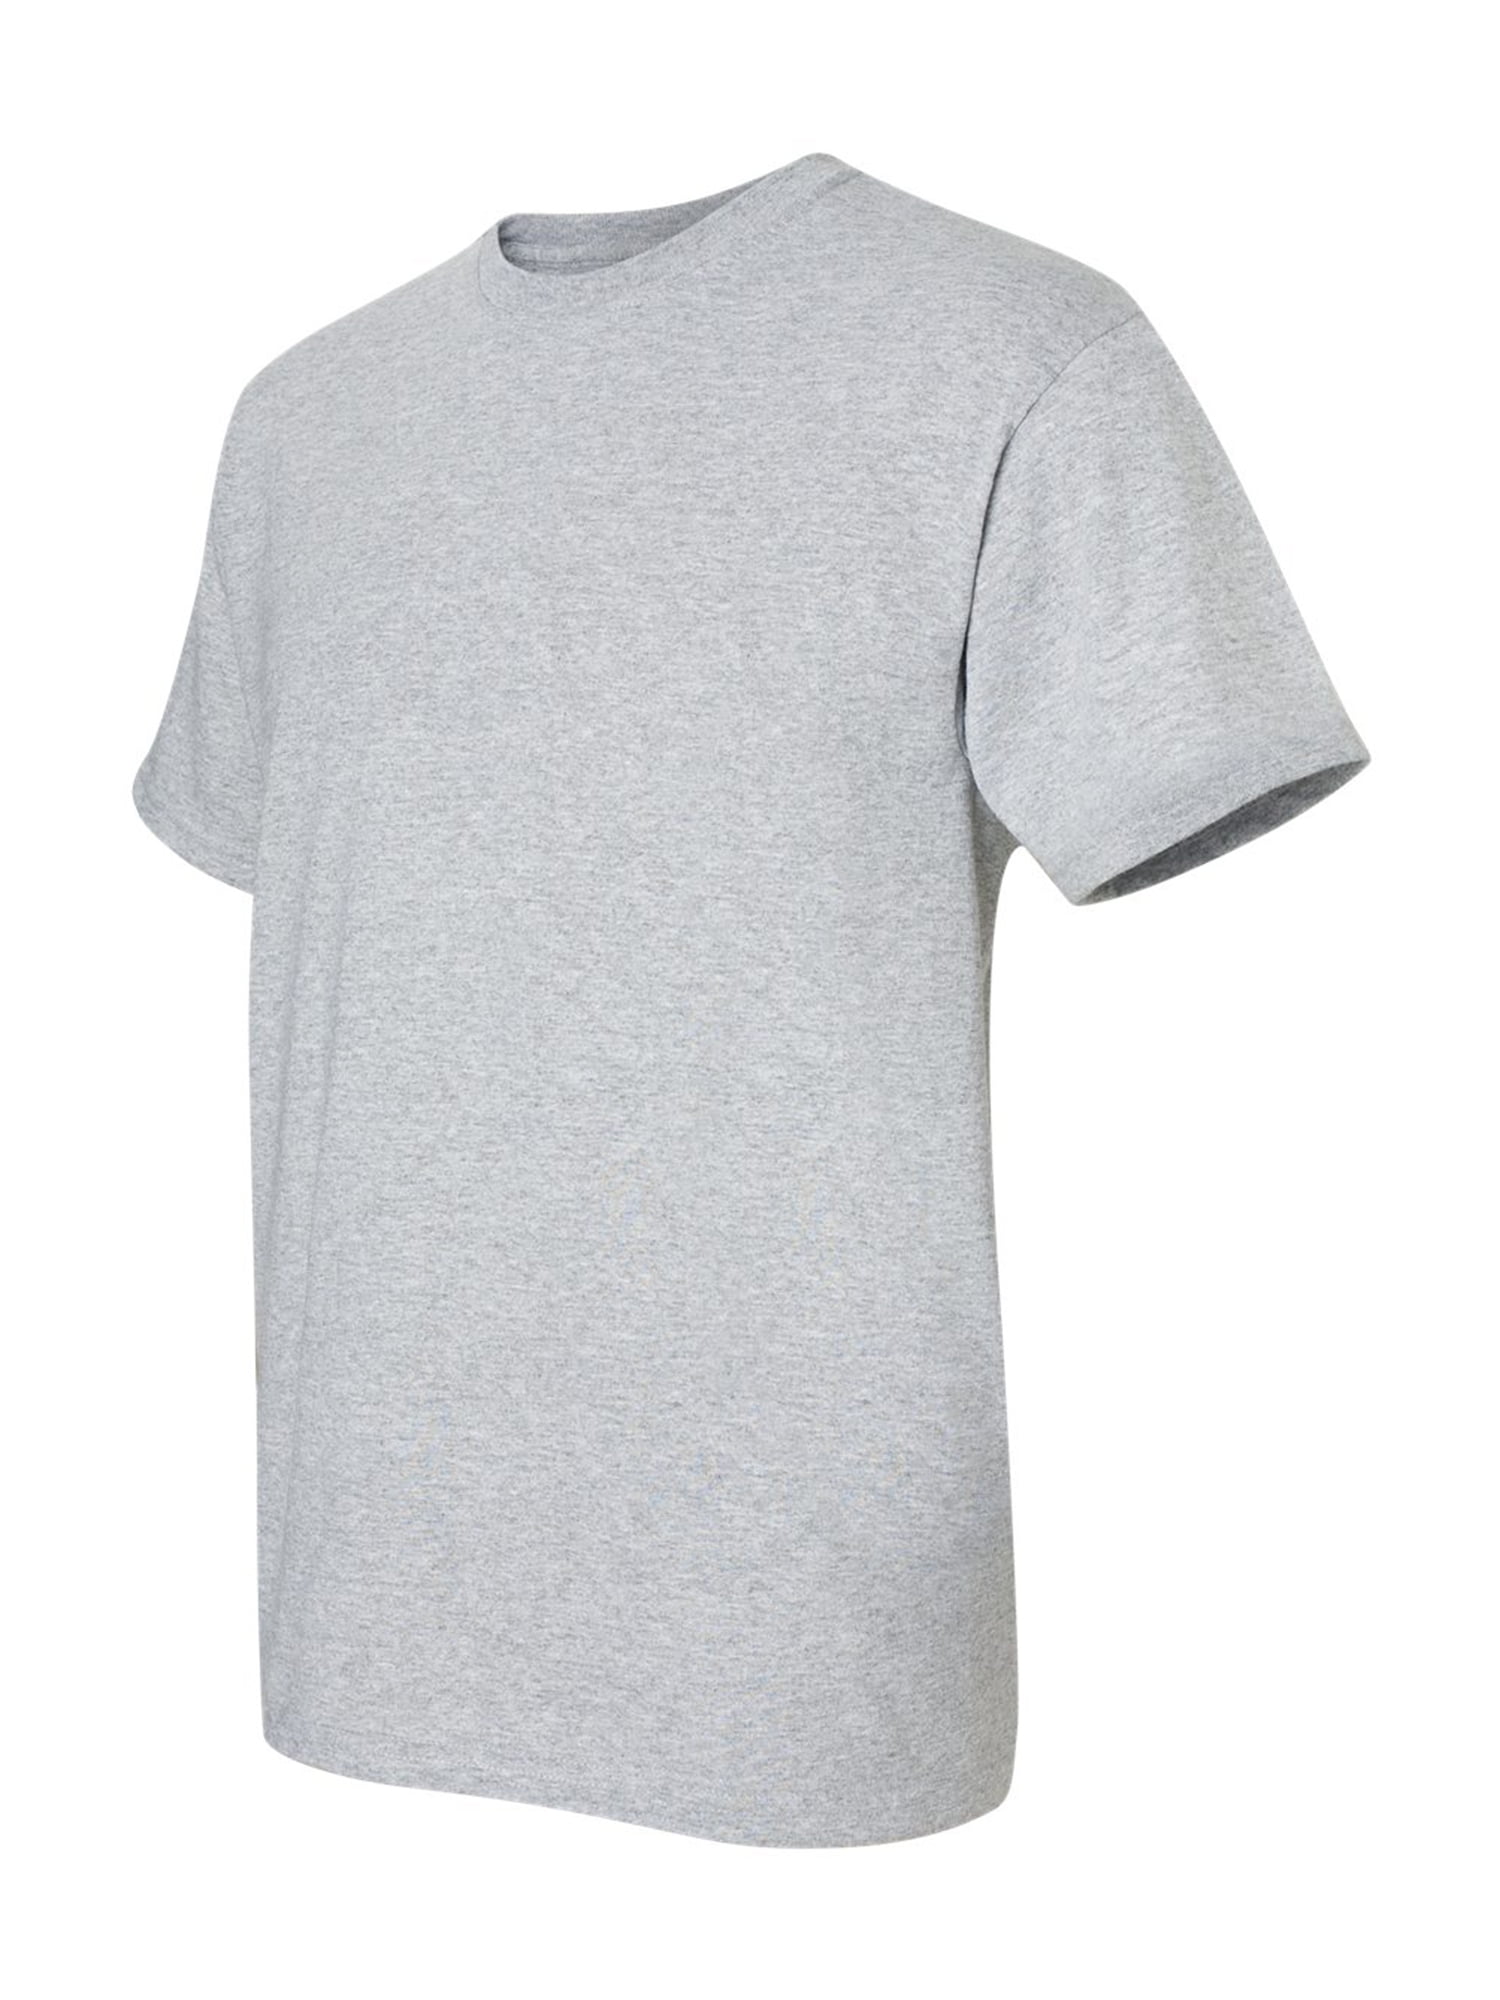 Sports Shirt Men - Gildan 2000 - Men T-Shirt Cotton Men Shirt Original Shirts Best Mens Classic Short Sleeve Tee - Walmart.com